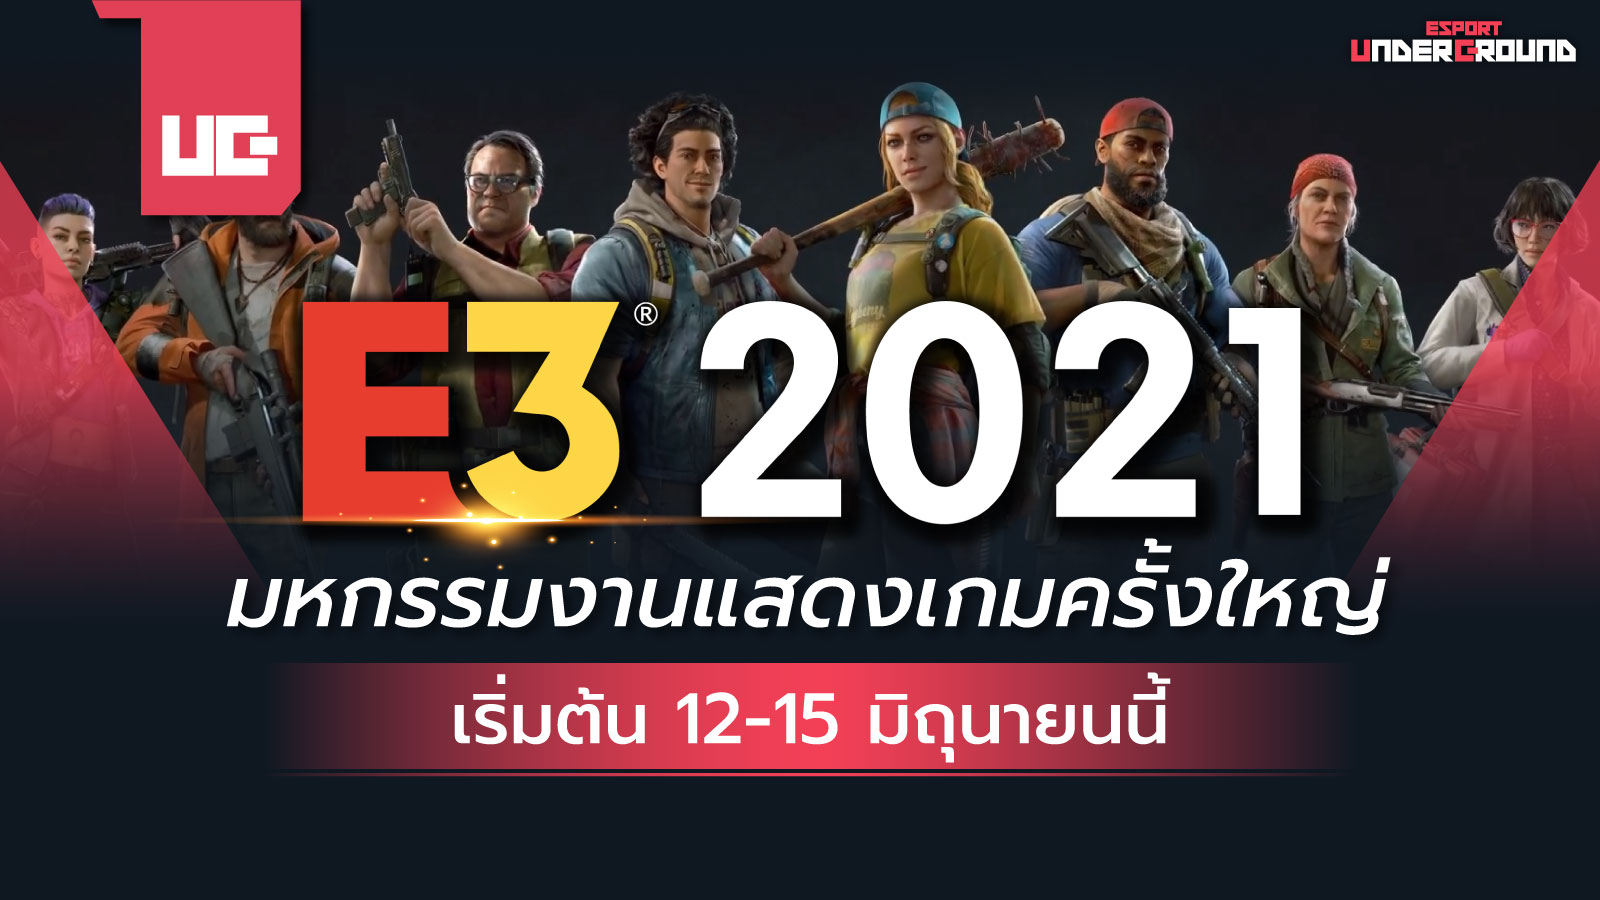 E3 2021 มหกรรมงานแสดงเกมครั้งใหญ่ เริ่ม 12-15 มิถุนายนนี้